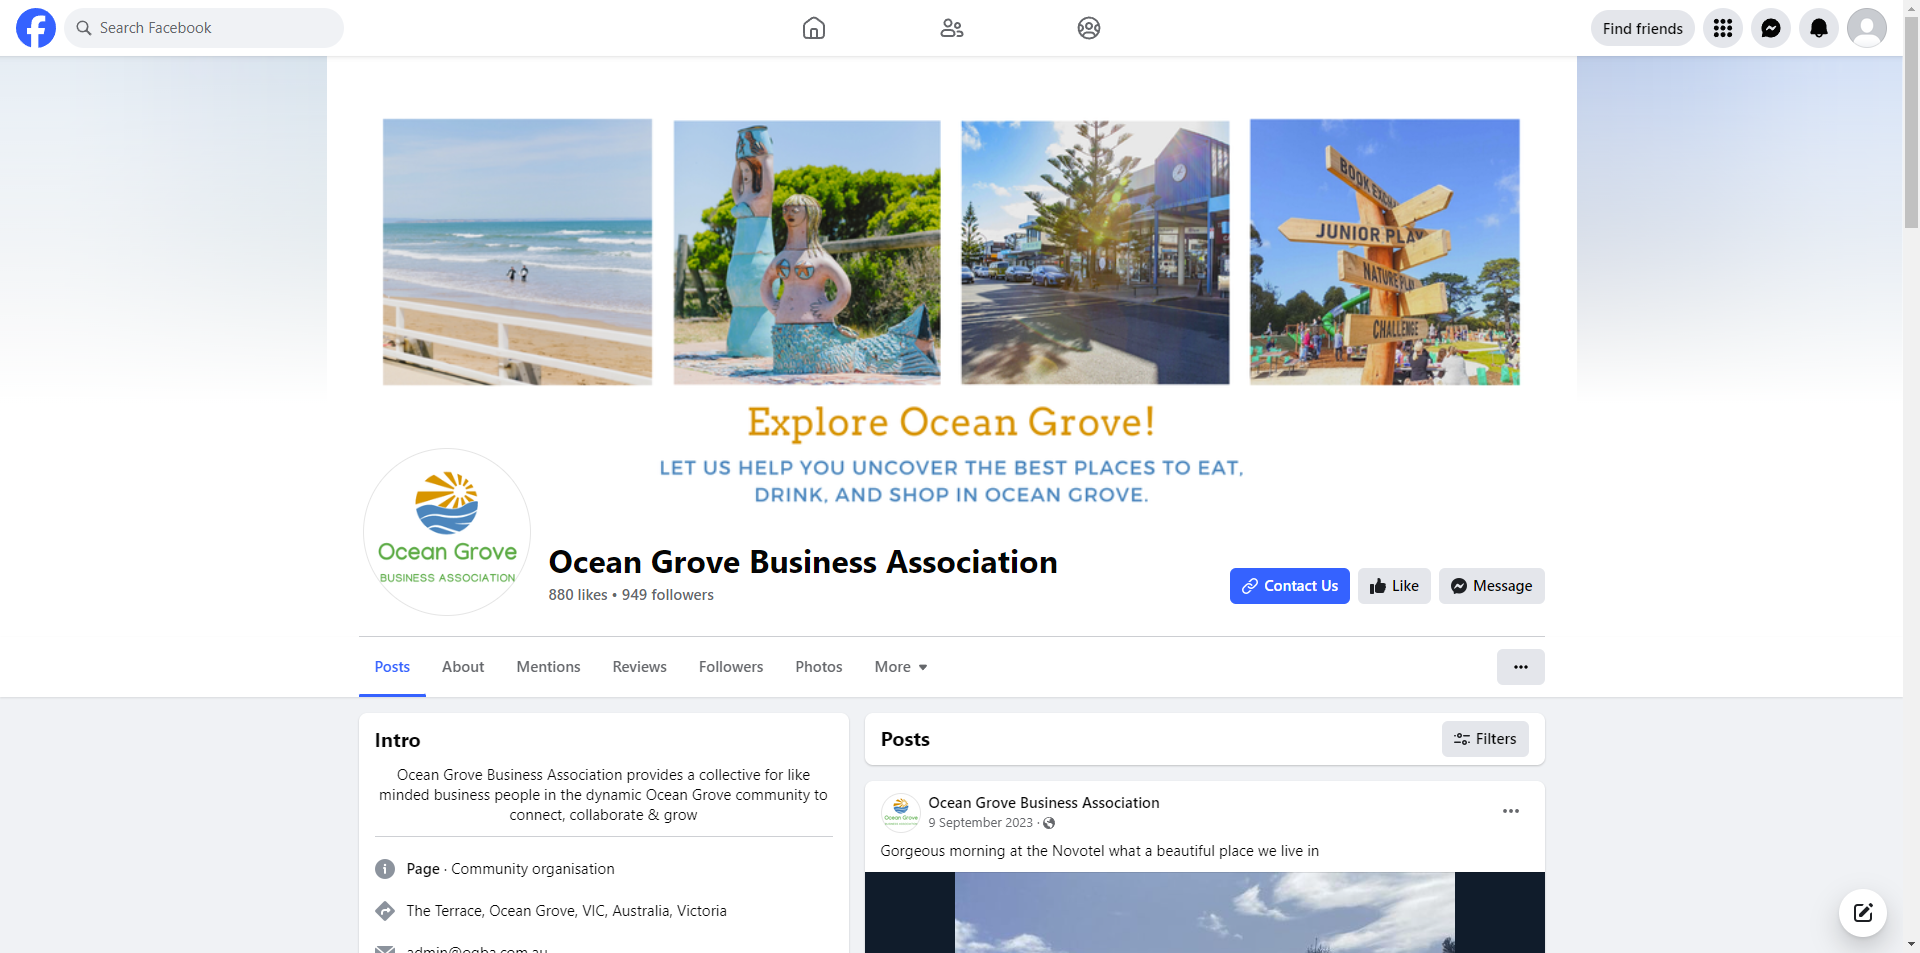 Ocean Grove Business Association